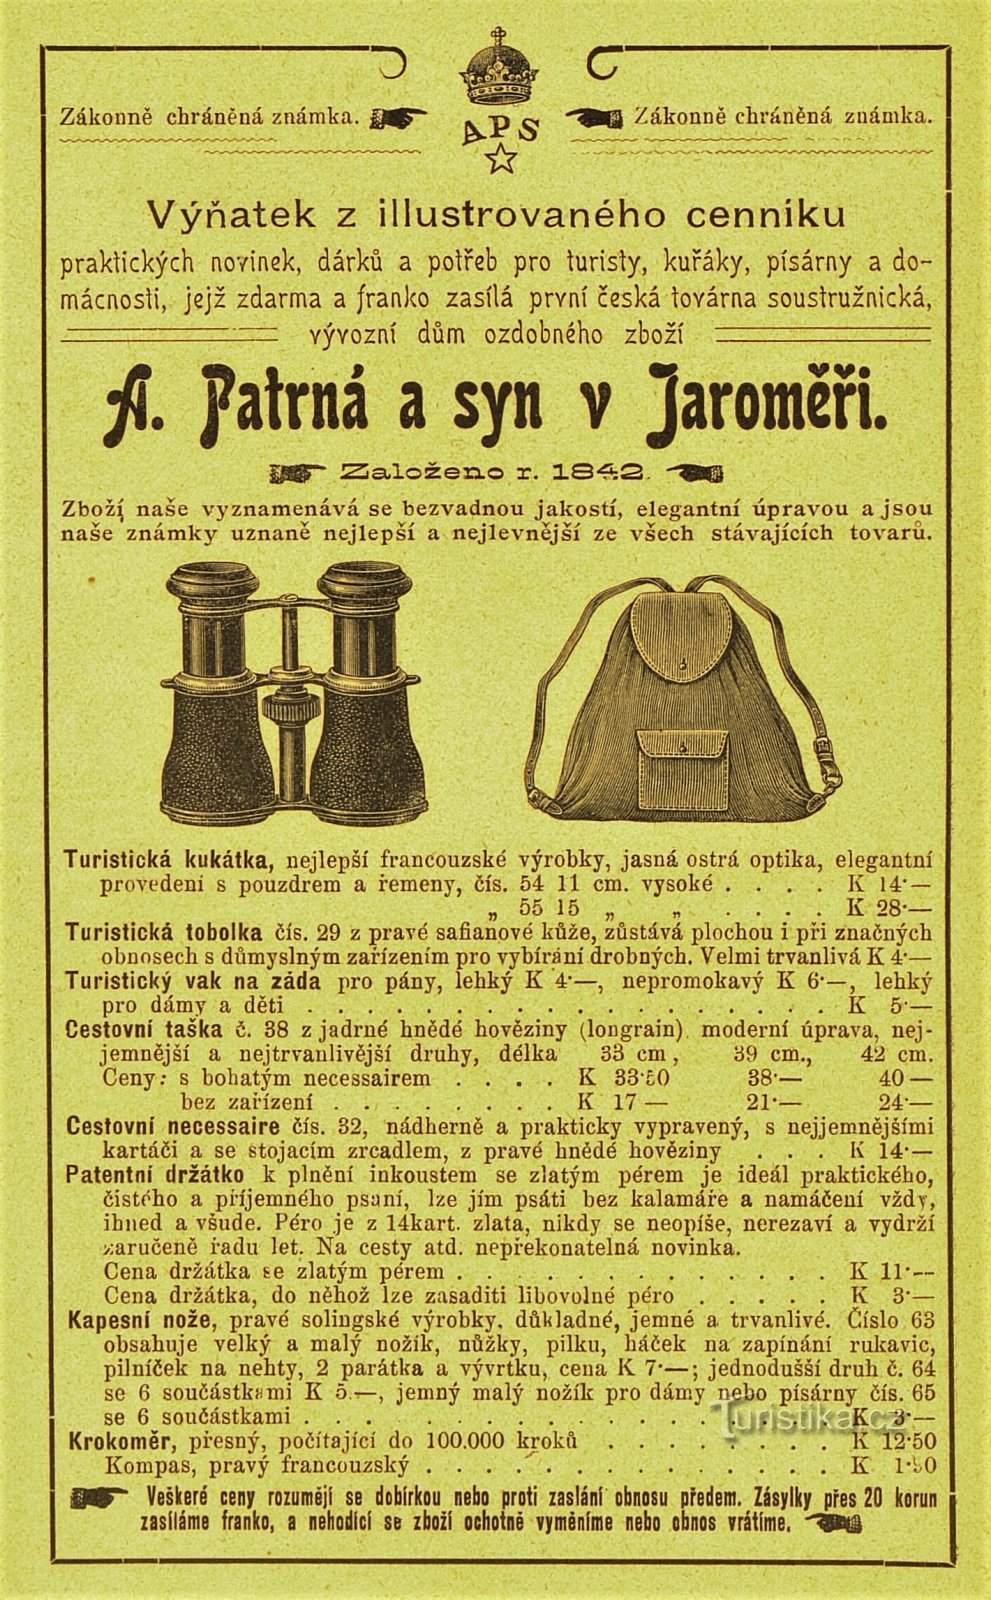 Publicité contemporaine de la société A. Patrná et fils à Jaroměř (1902)